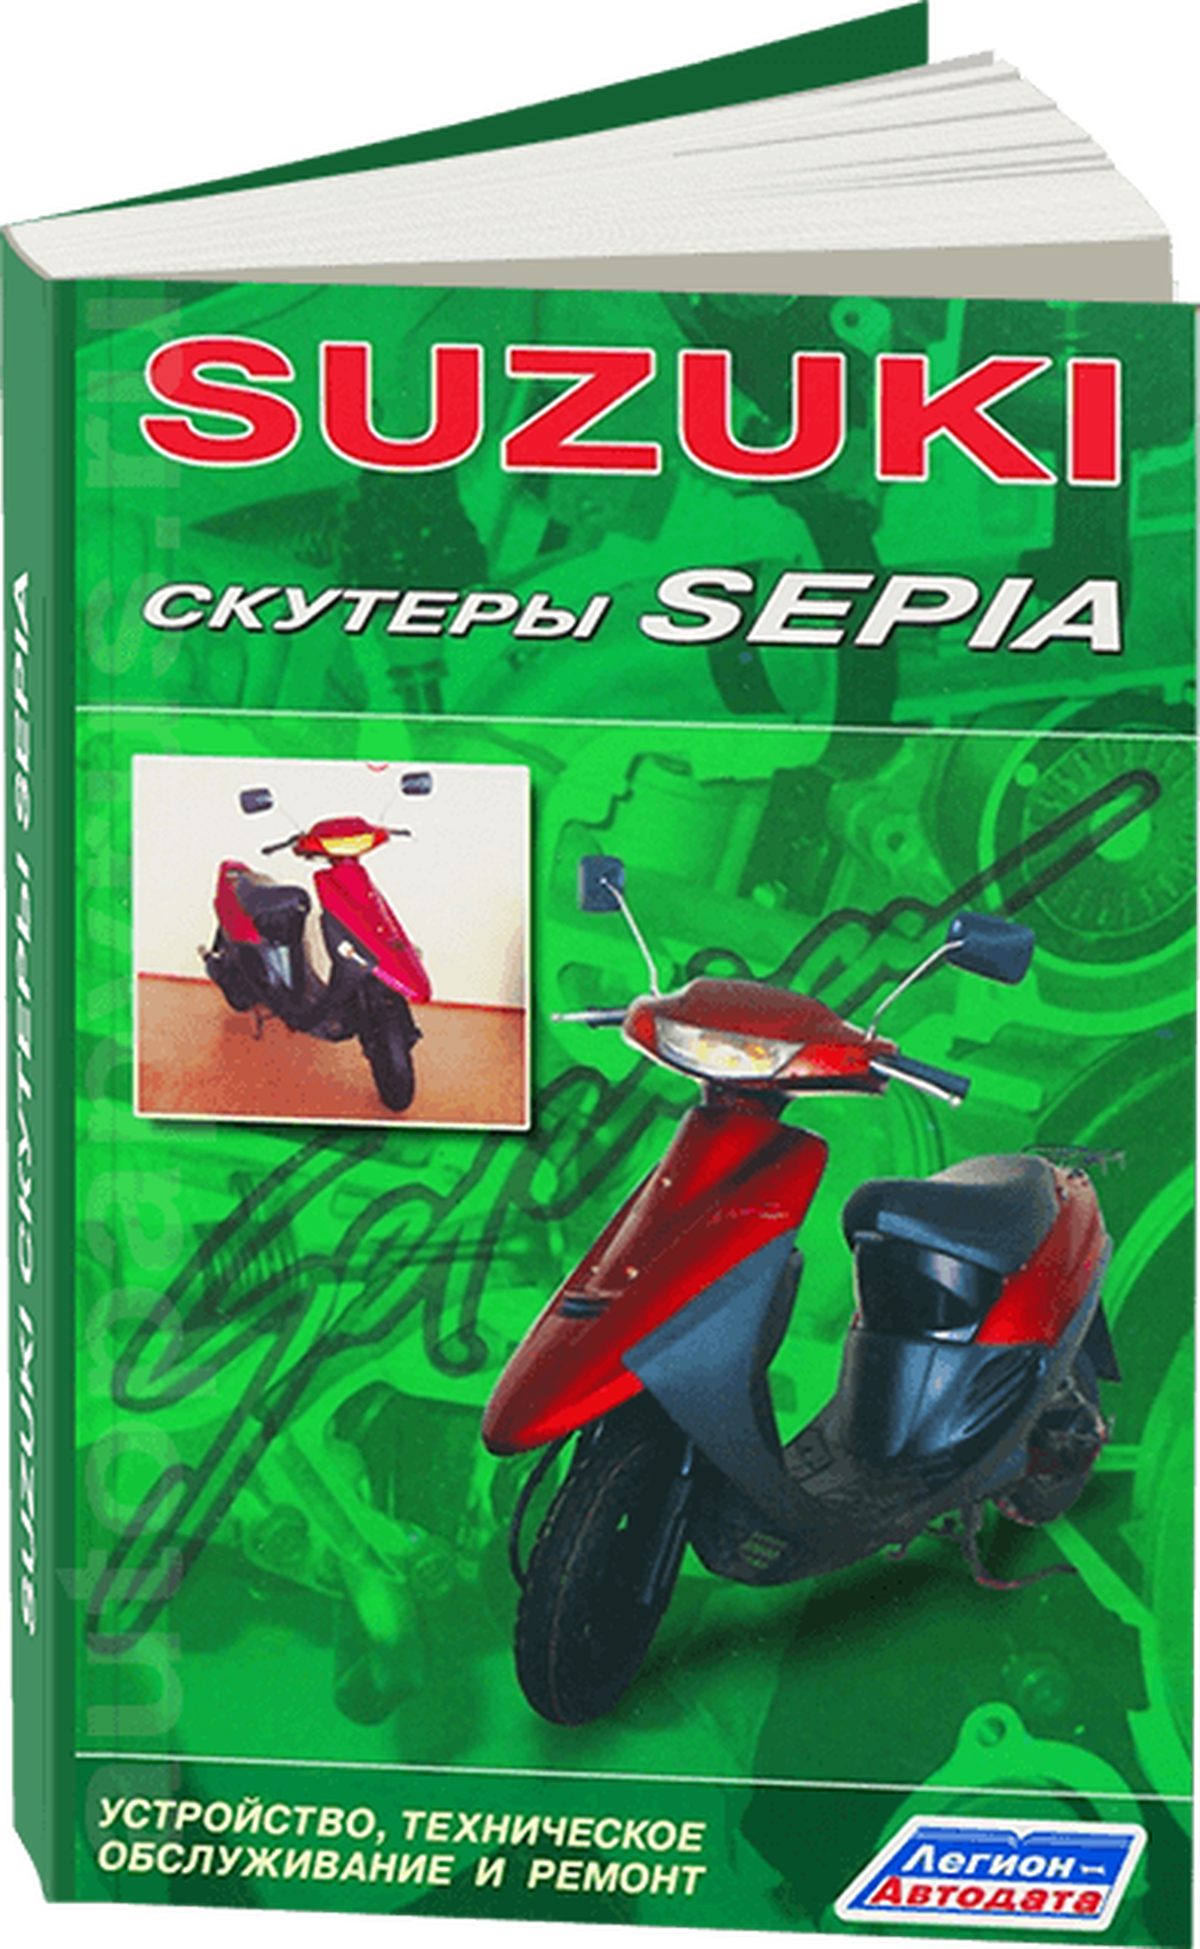 Автокнига: руководство / инструкция по ремонту и обслуживанию скутеров SUZUKI SEPIA 978-5-88850-167-0 издательство Легион-Aвтодата